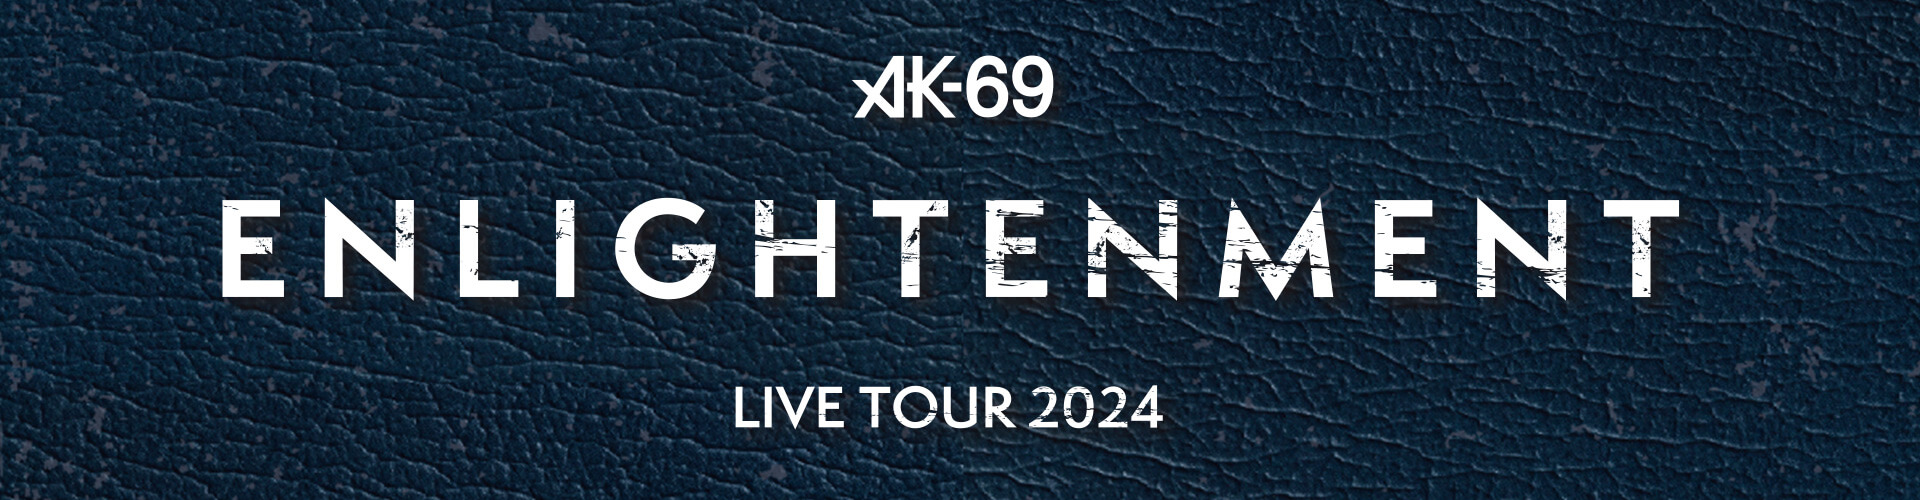 AK-69 LIVE TOUR 2024 -Enlightenment-